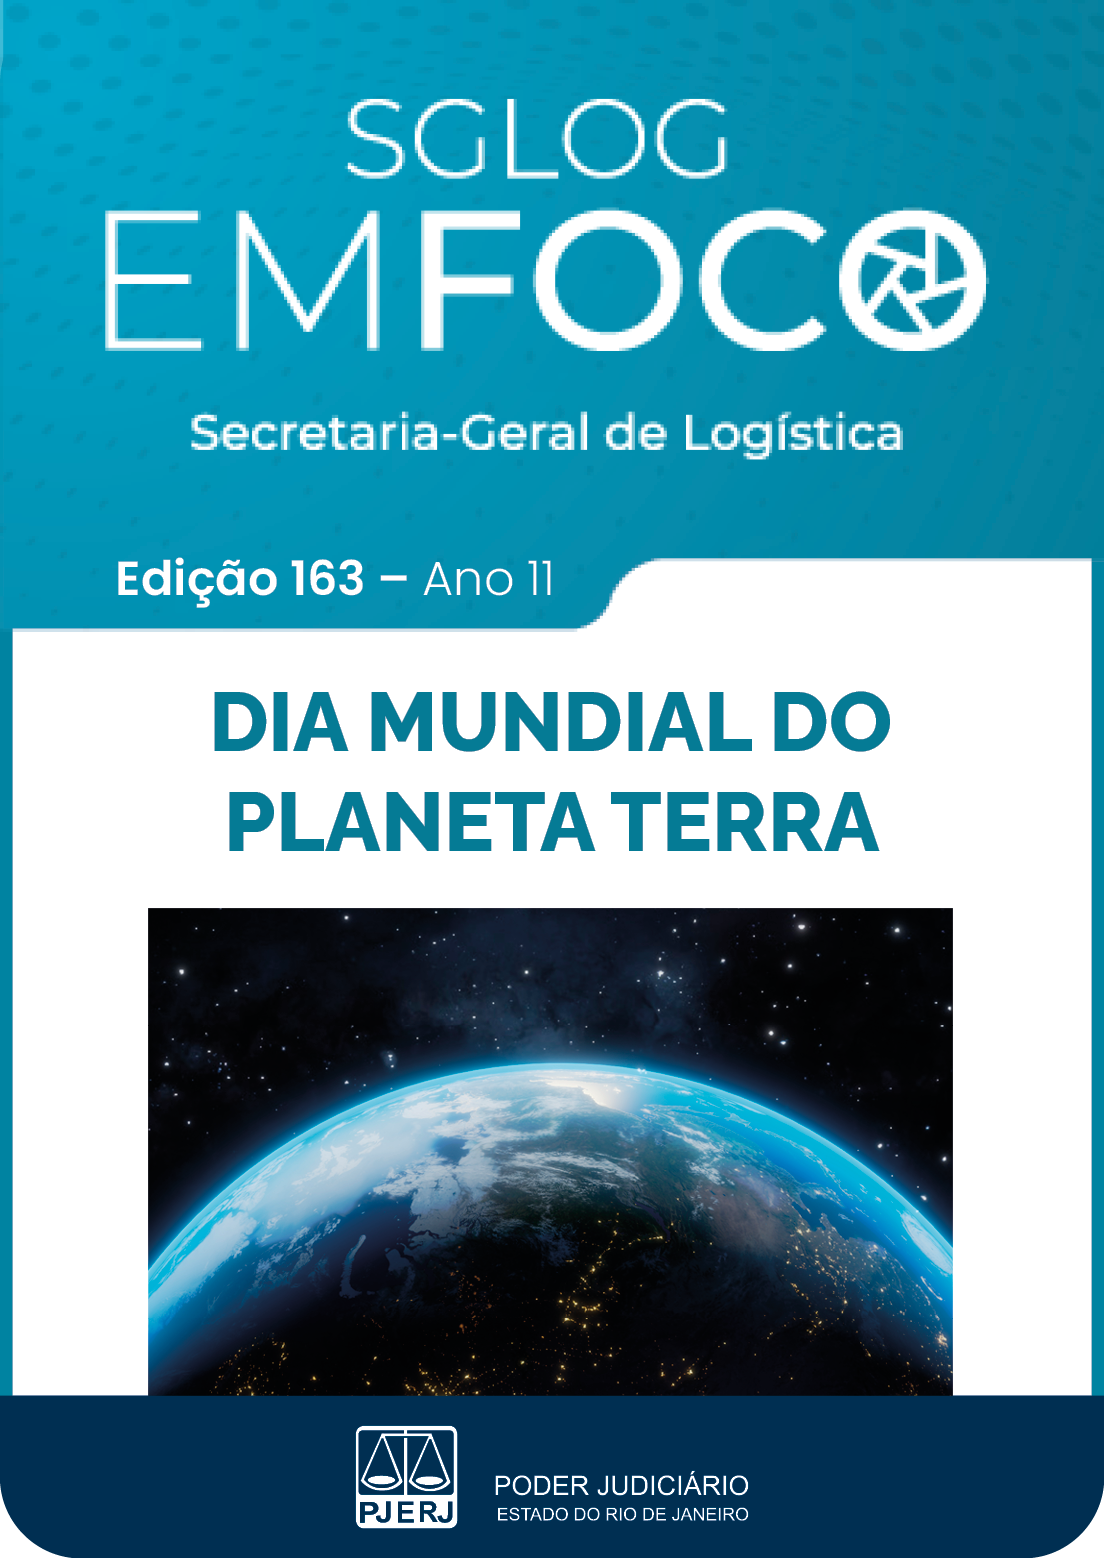 SGLOG EM FOCO - Secretaria-Geral de Logística - Edição 163 - ano 11 - DIA MUNDIAL DO PLANETA TERRA